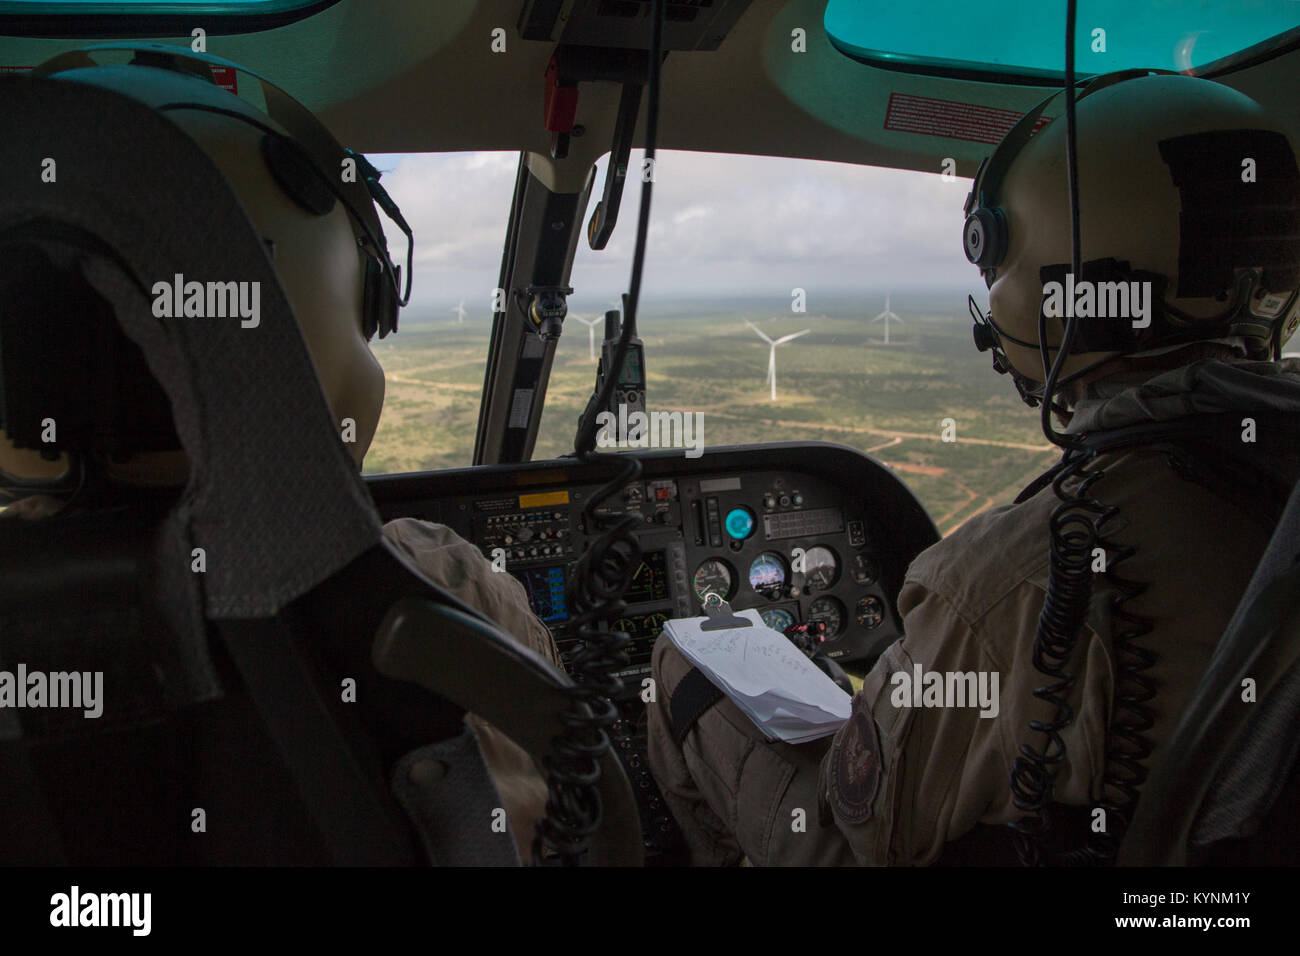 Während des Fluges, einem US-amerikanischen Zoll- und Grenzschutzbehörden, Luft und Marine Operations pilot scannt die Gegend für jede verdächtige Aktivität entlang der Laredo, Texas Grenze. Fotograf: Donna Burton Stockfoto